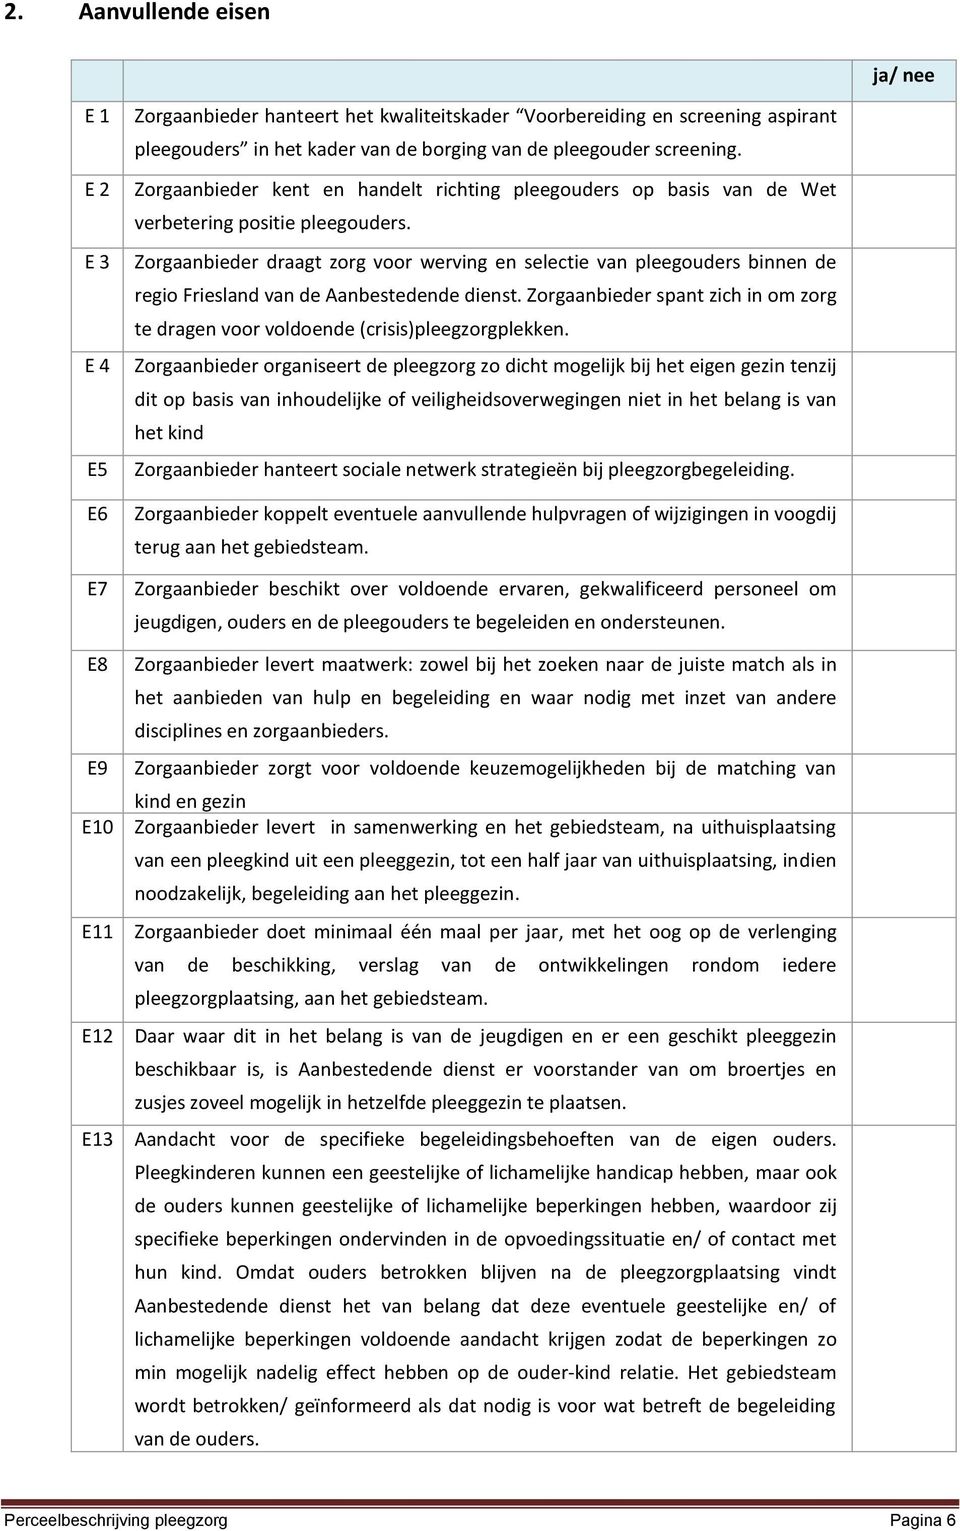 Zorgaanbieder draagt zorg voor werving en selectie van pleegouders binnen de regio Friesland van de Aanbestedende dienst.